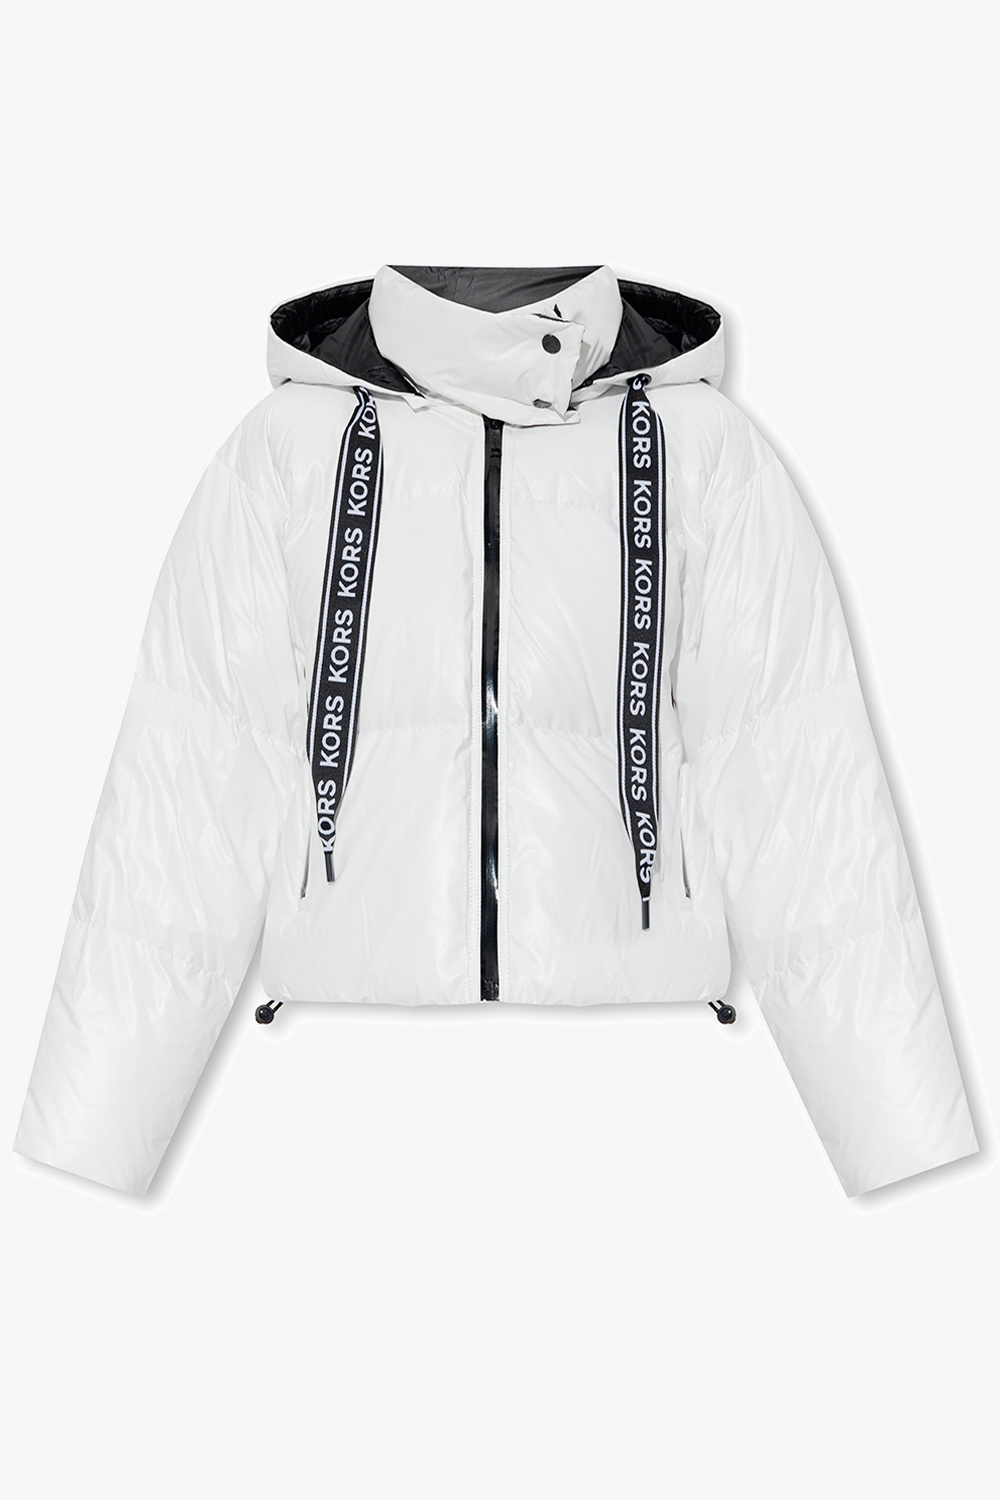 Michael Kors puffer jacket for women size m wwwmelpoejocombr